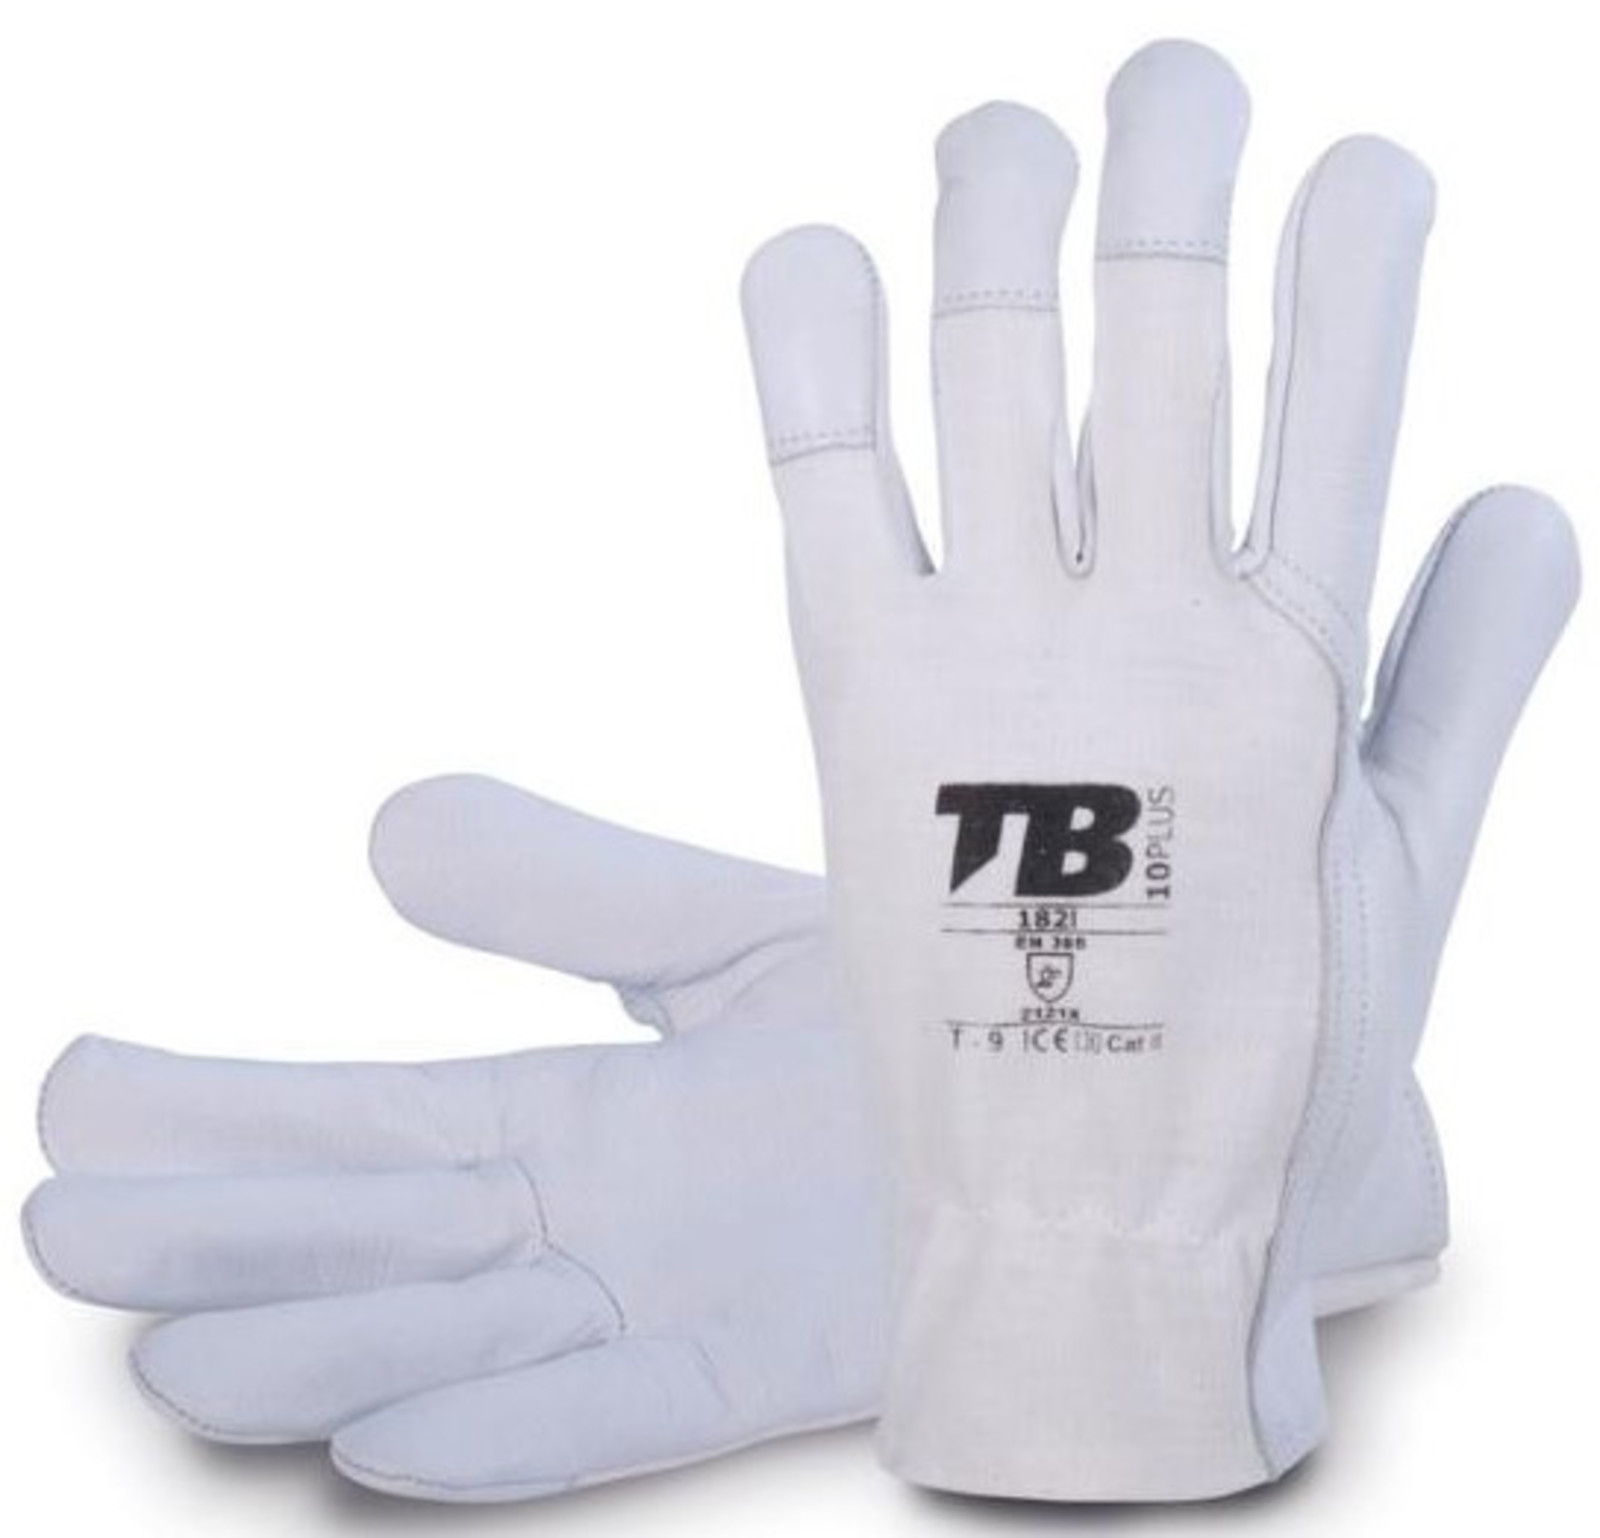 Pracovné rukavice TB 182IB kombinované - veľkosť: 8/M